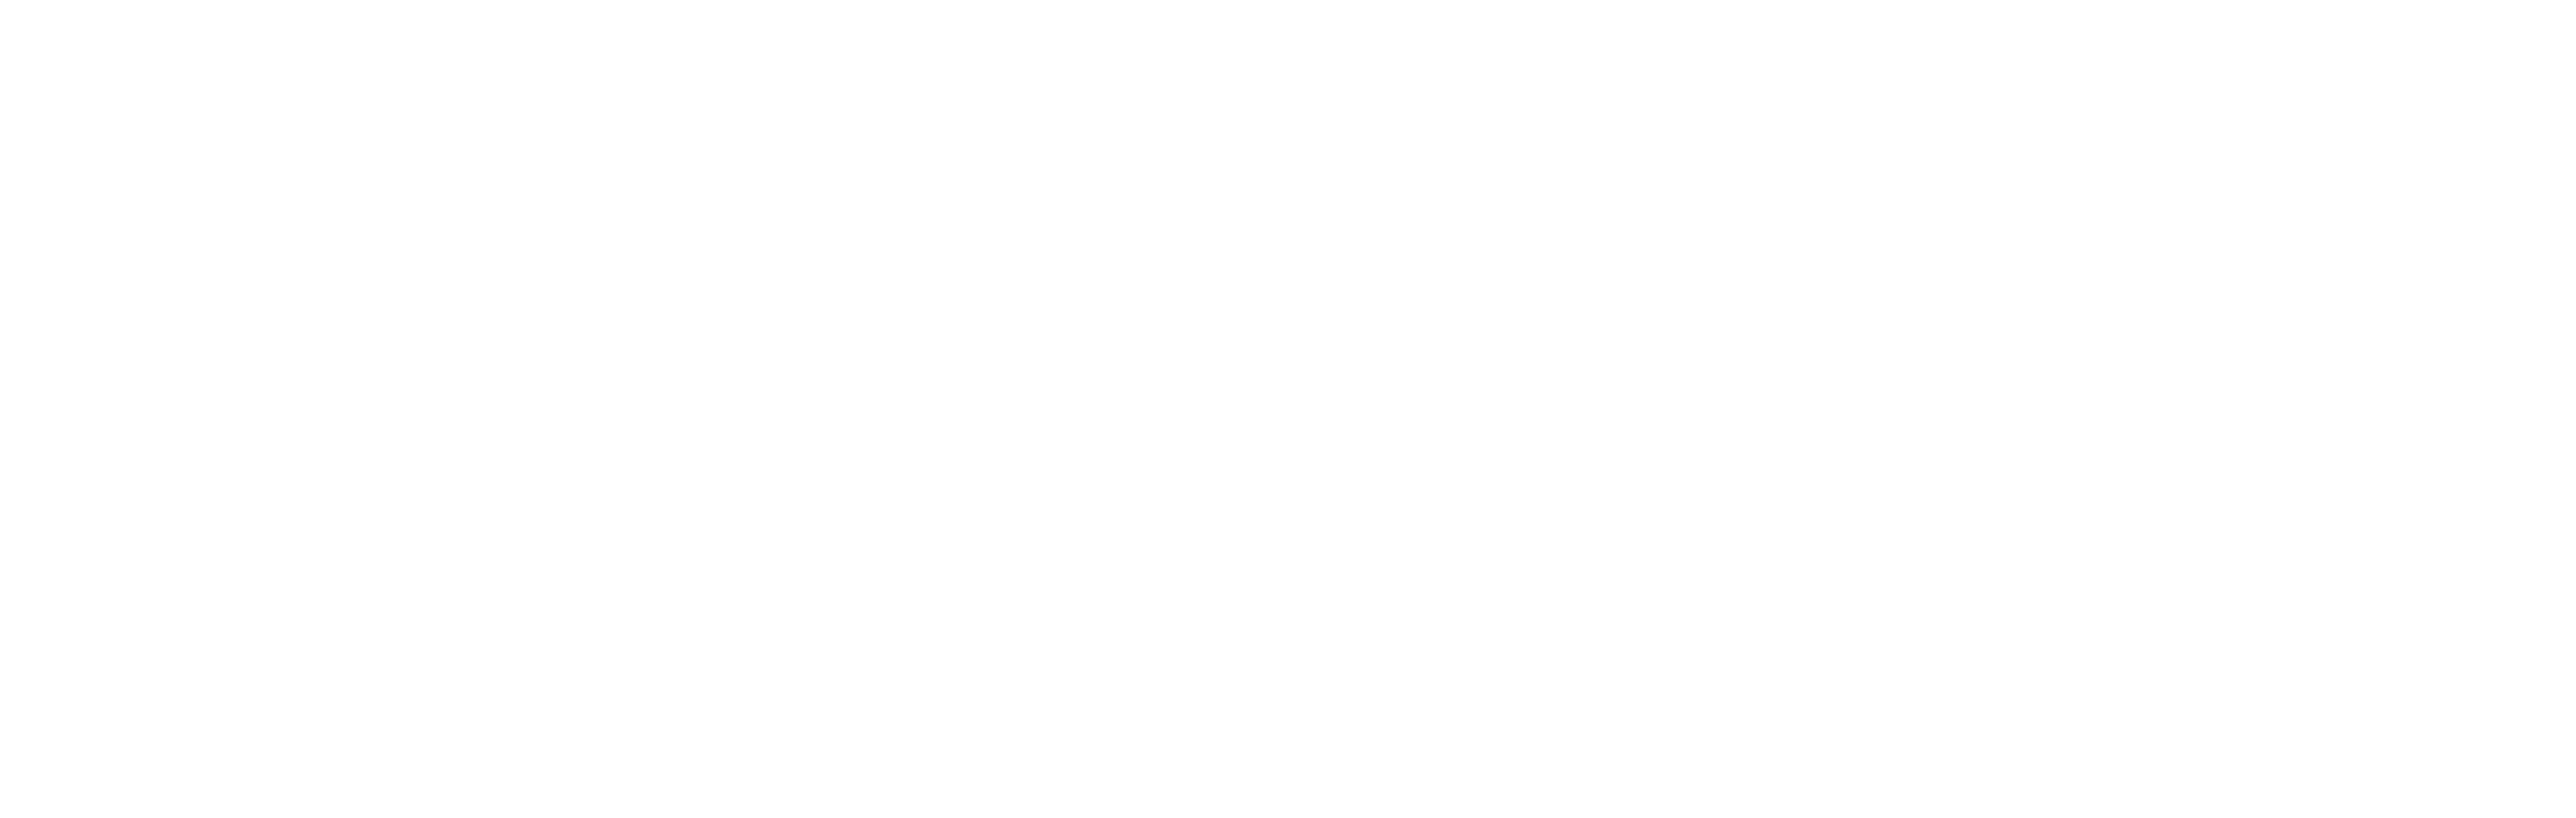 QATTS | Resources